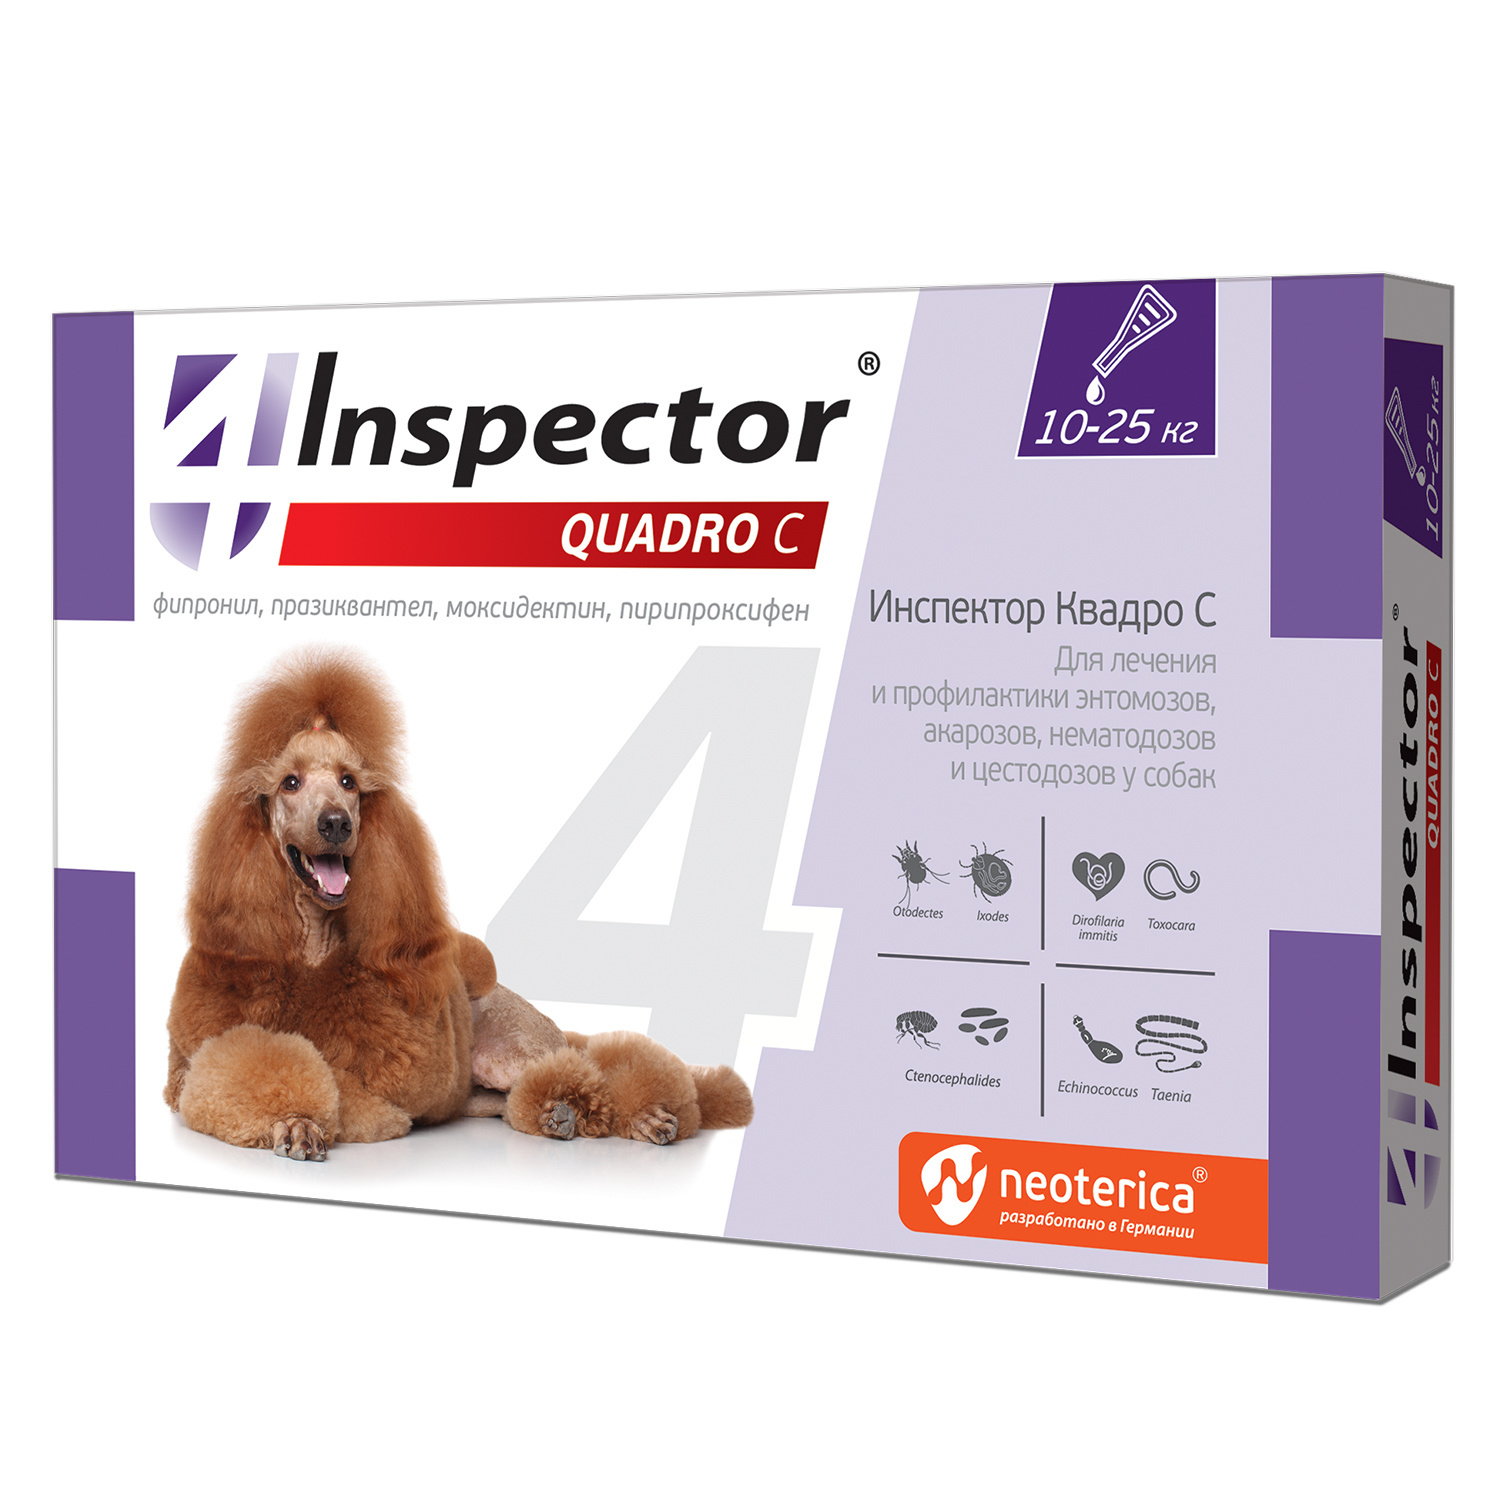 Inspector Inspector quadro капли на холку для собак весом 10-25 кг от клещей, насекомых, глистов (20 г) inspector inspector капли на холку для собак 1 4кг 3 шт 25 г